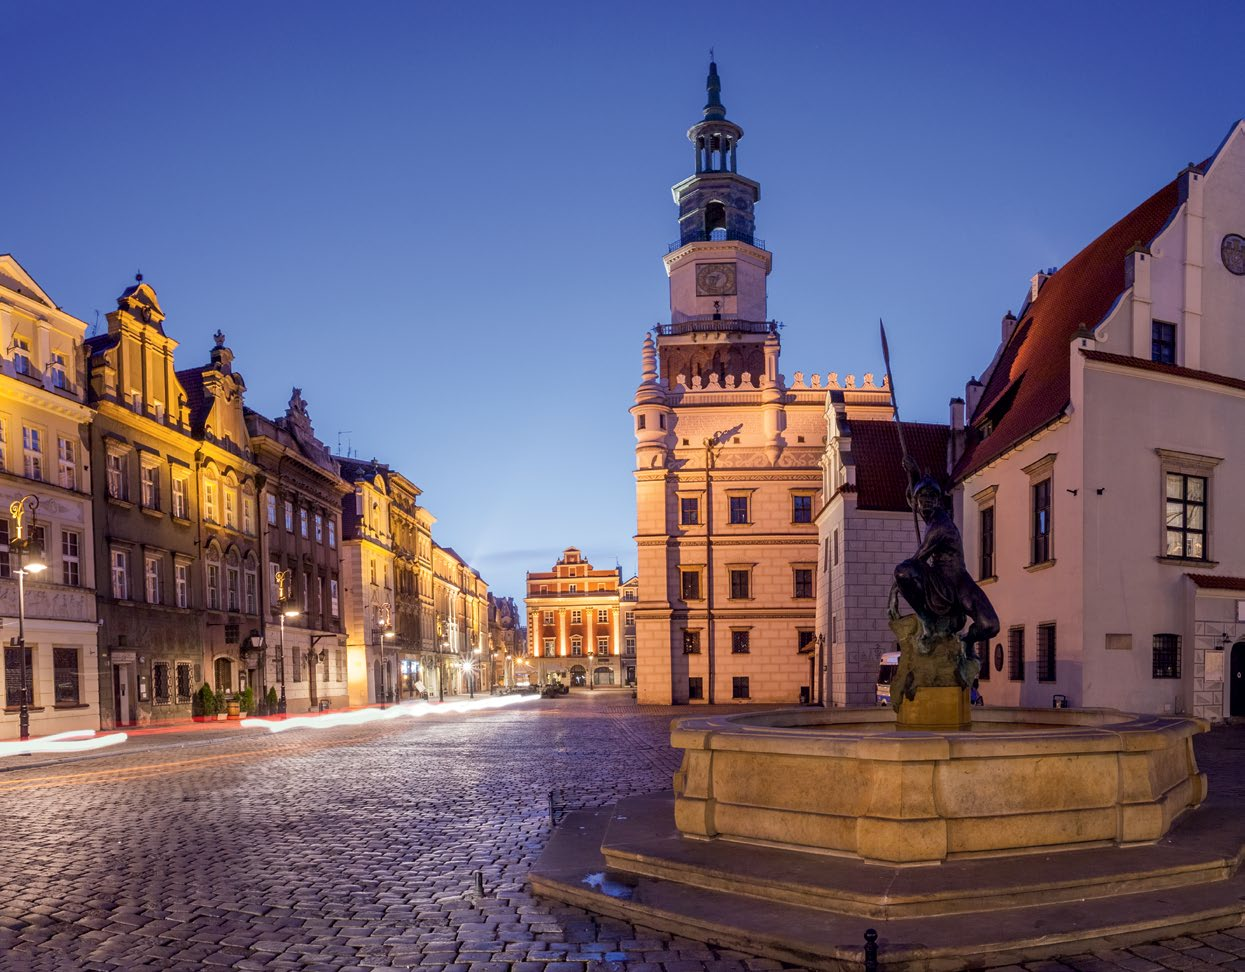 44 Usługi biznesowe w Poznaniu Wsparcie inwestorów - informacje kontaktowe 7 Wsparcie inwestorów informacje kontaktowe Zdjęcie: Shutterstock Już od ponad dekady Biuro Obsługi Inwestorów (BOI) wspiera